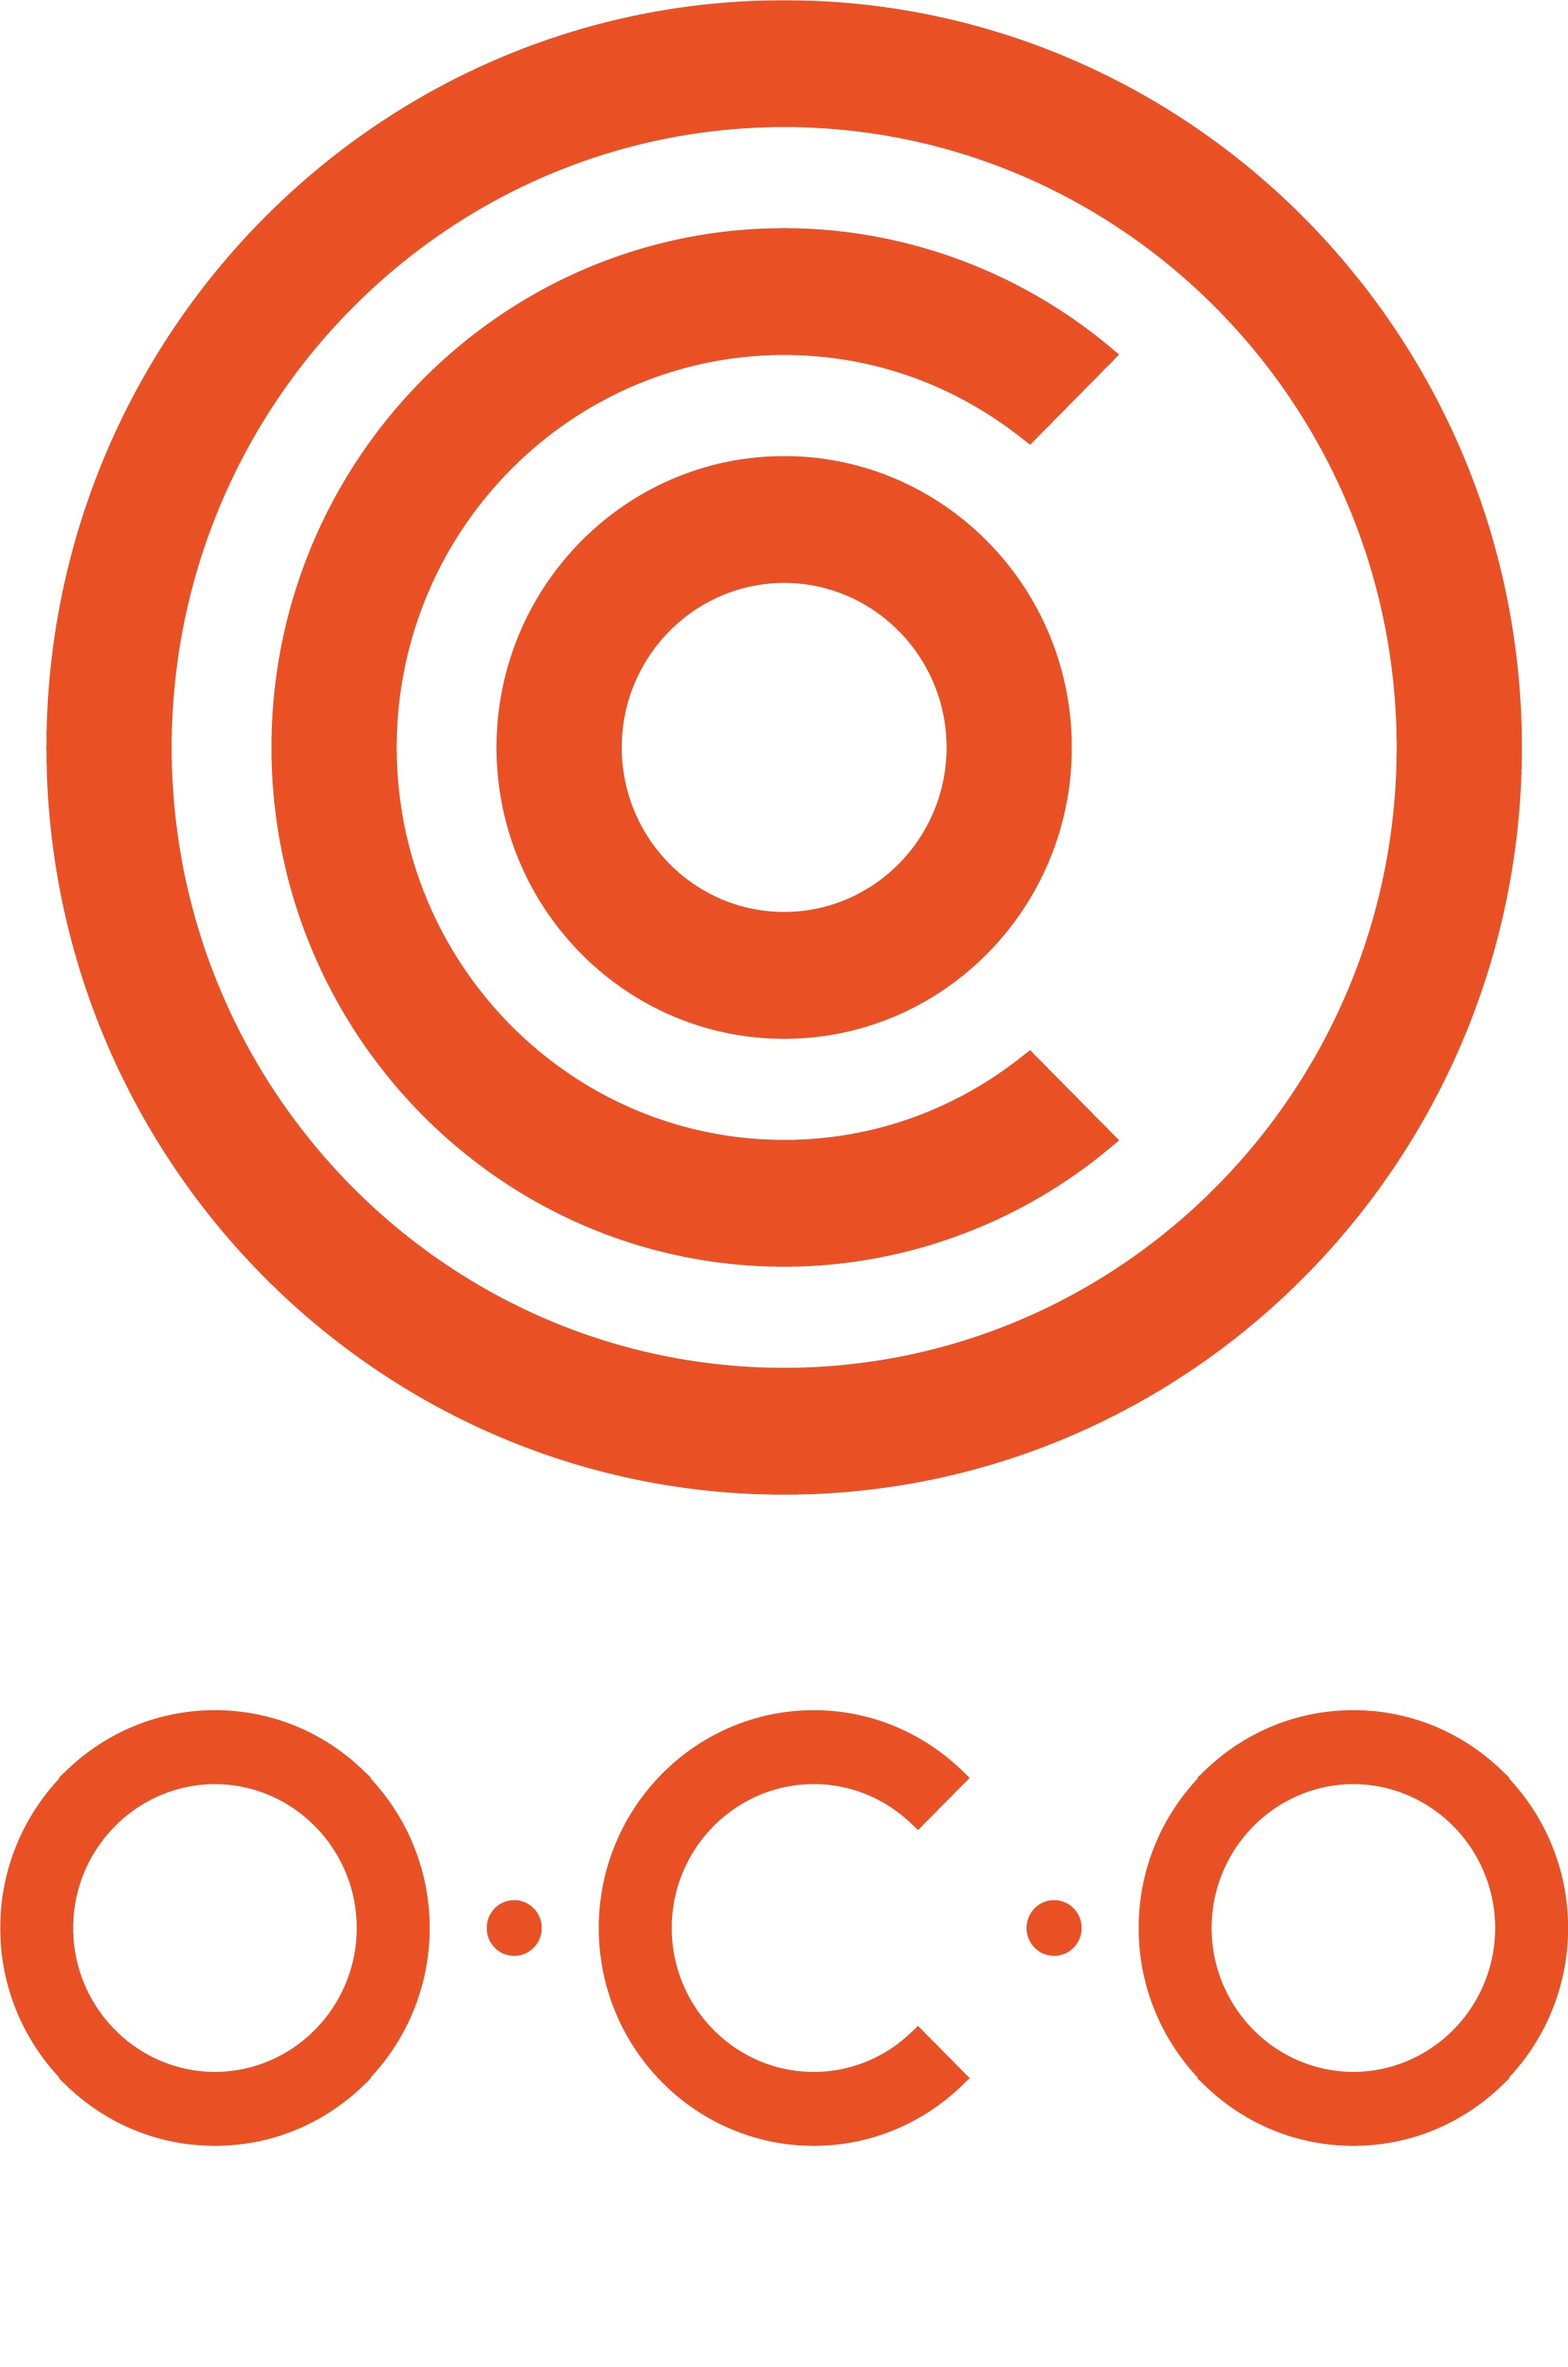 logo for O.C.O Technology Ltd